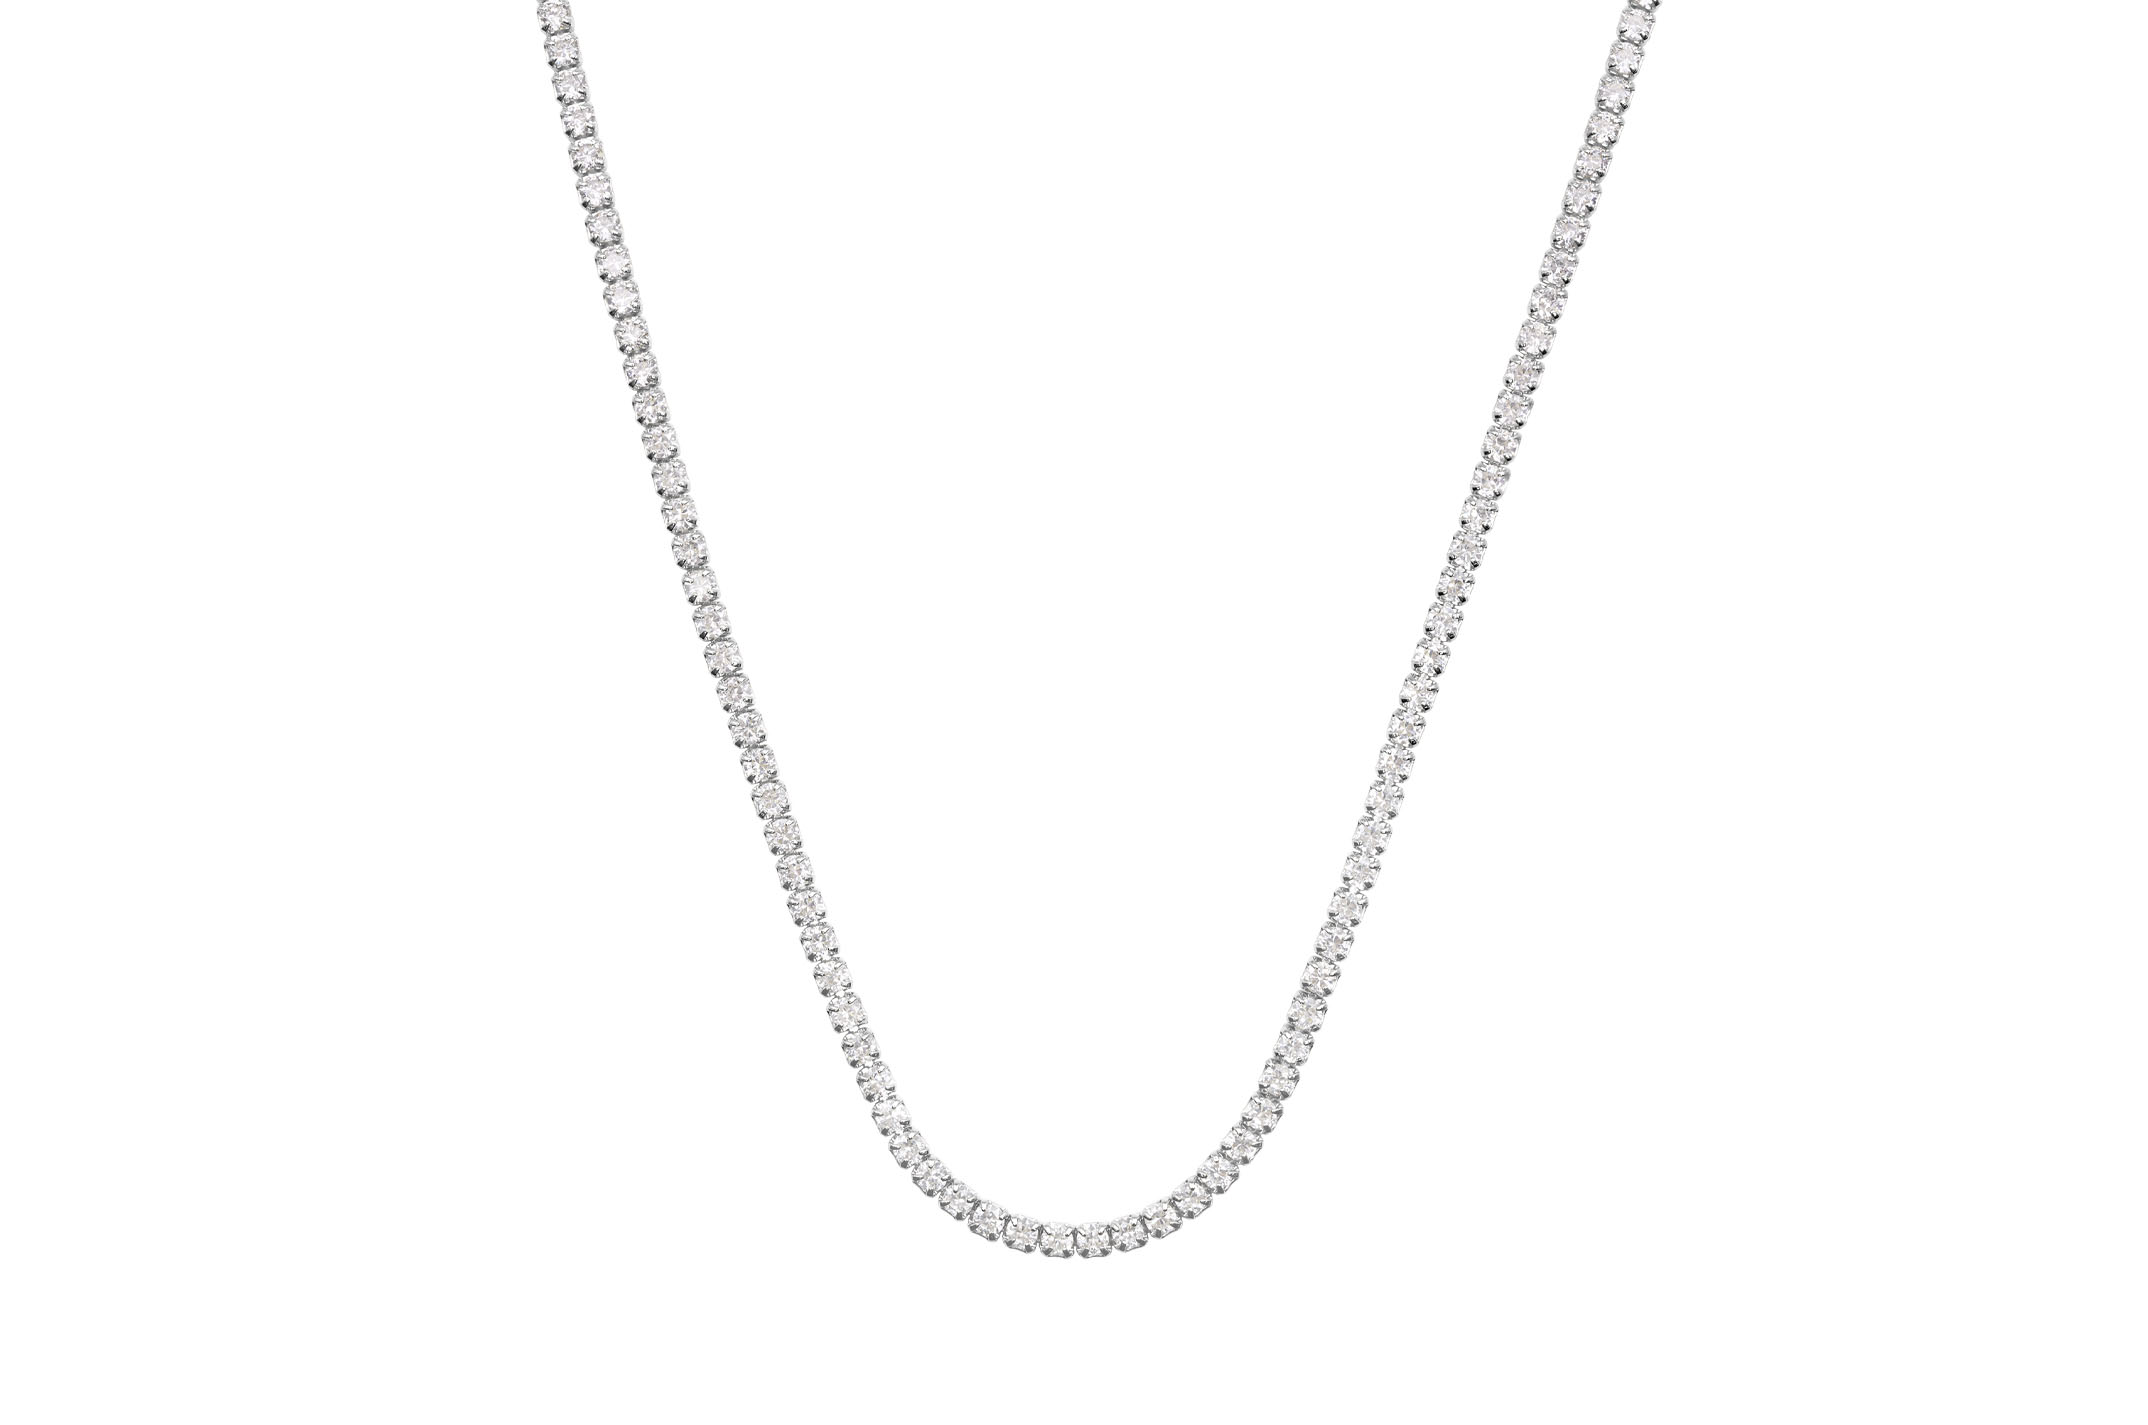 Joia: colar;Material: prata 925;Peso: 8.5 gr;Pedras: zircónias;Cor: branco;Tamanho: 38 cm + 5 cm;Género: mulher